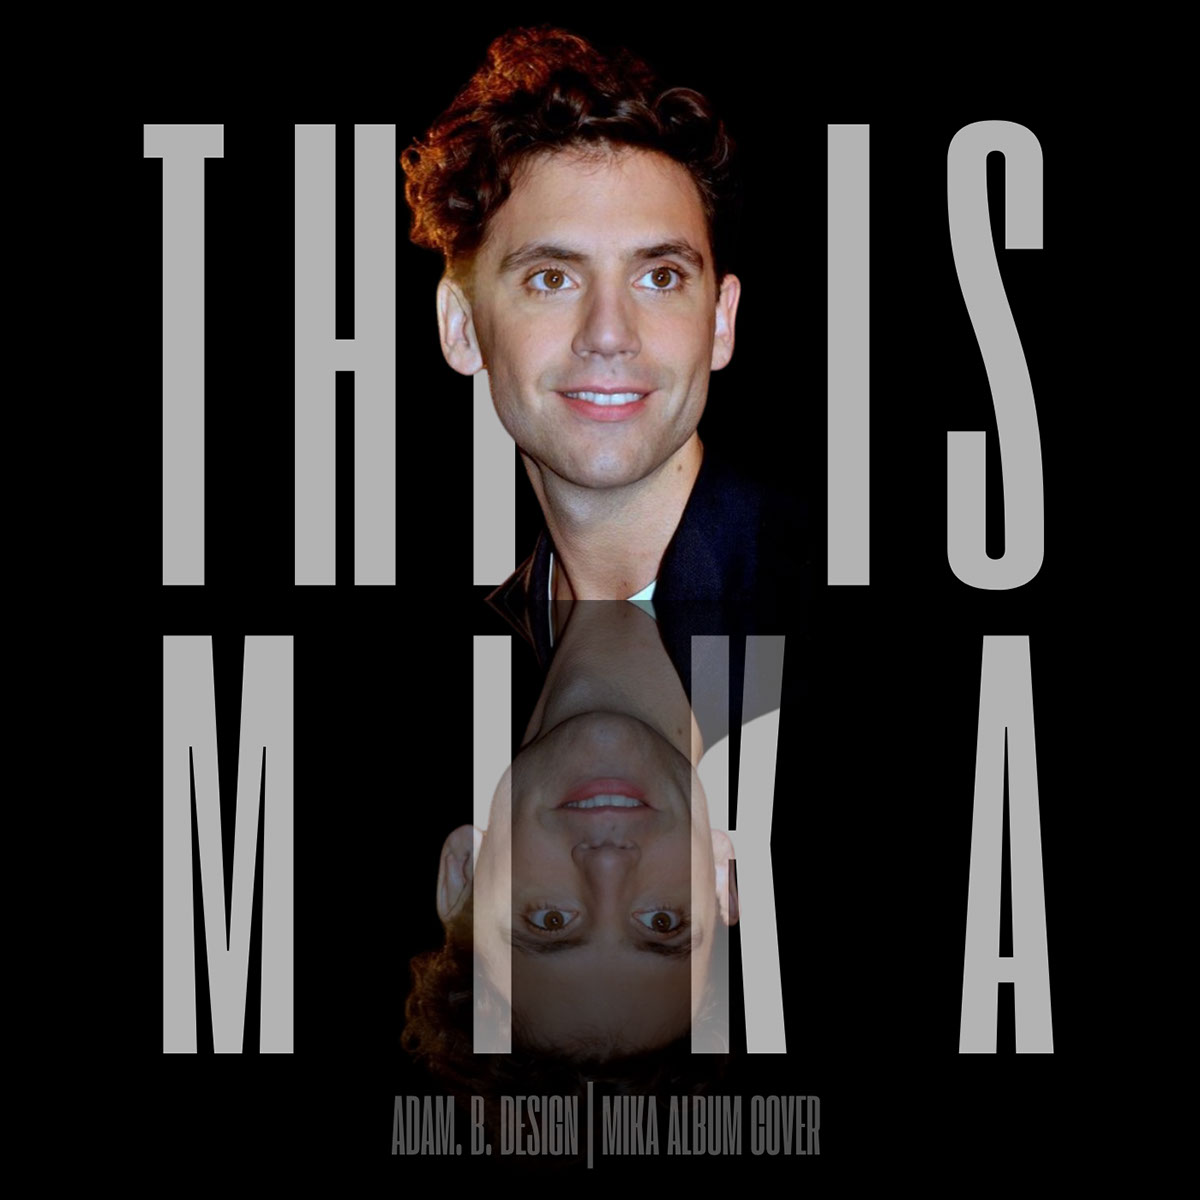 This is Mika Album Designs Catalog rendition image